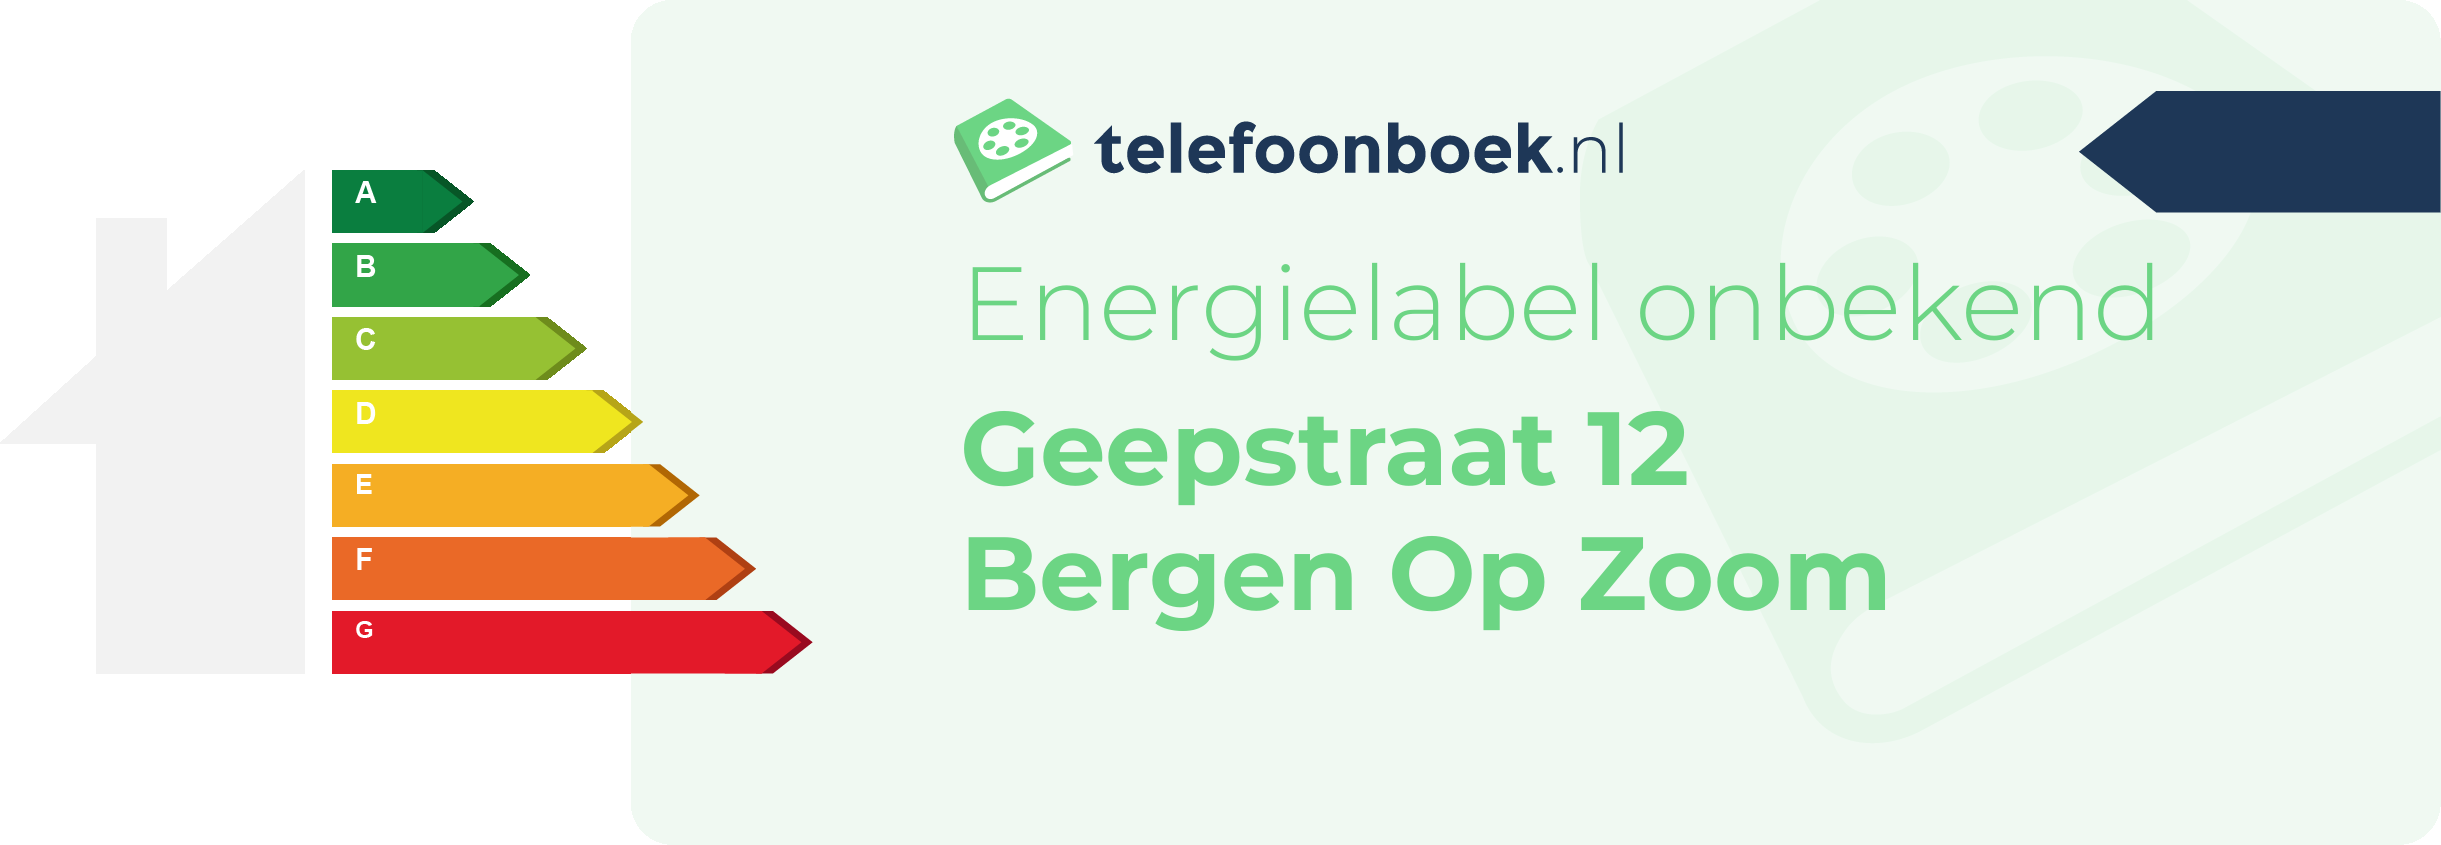 Energielabel Geepstraat 12 Bergen Op Zoom